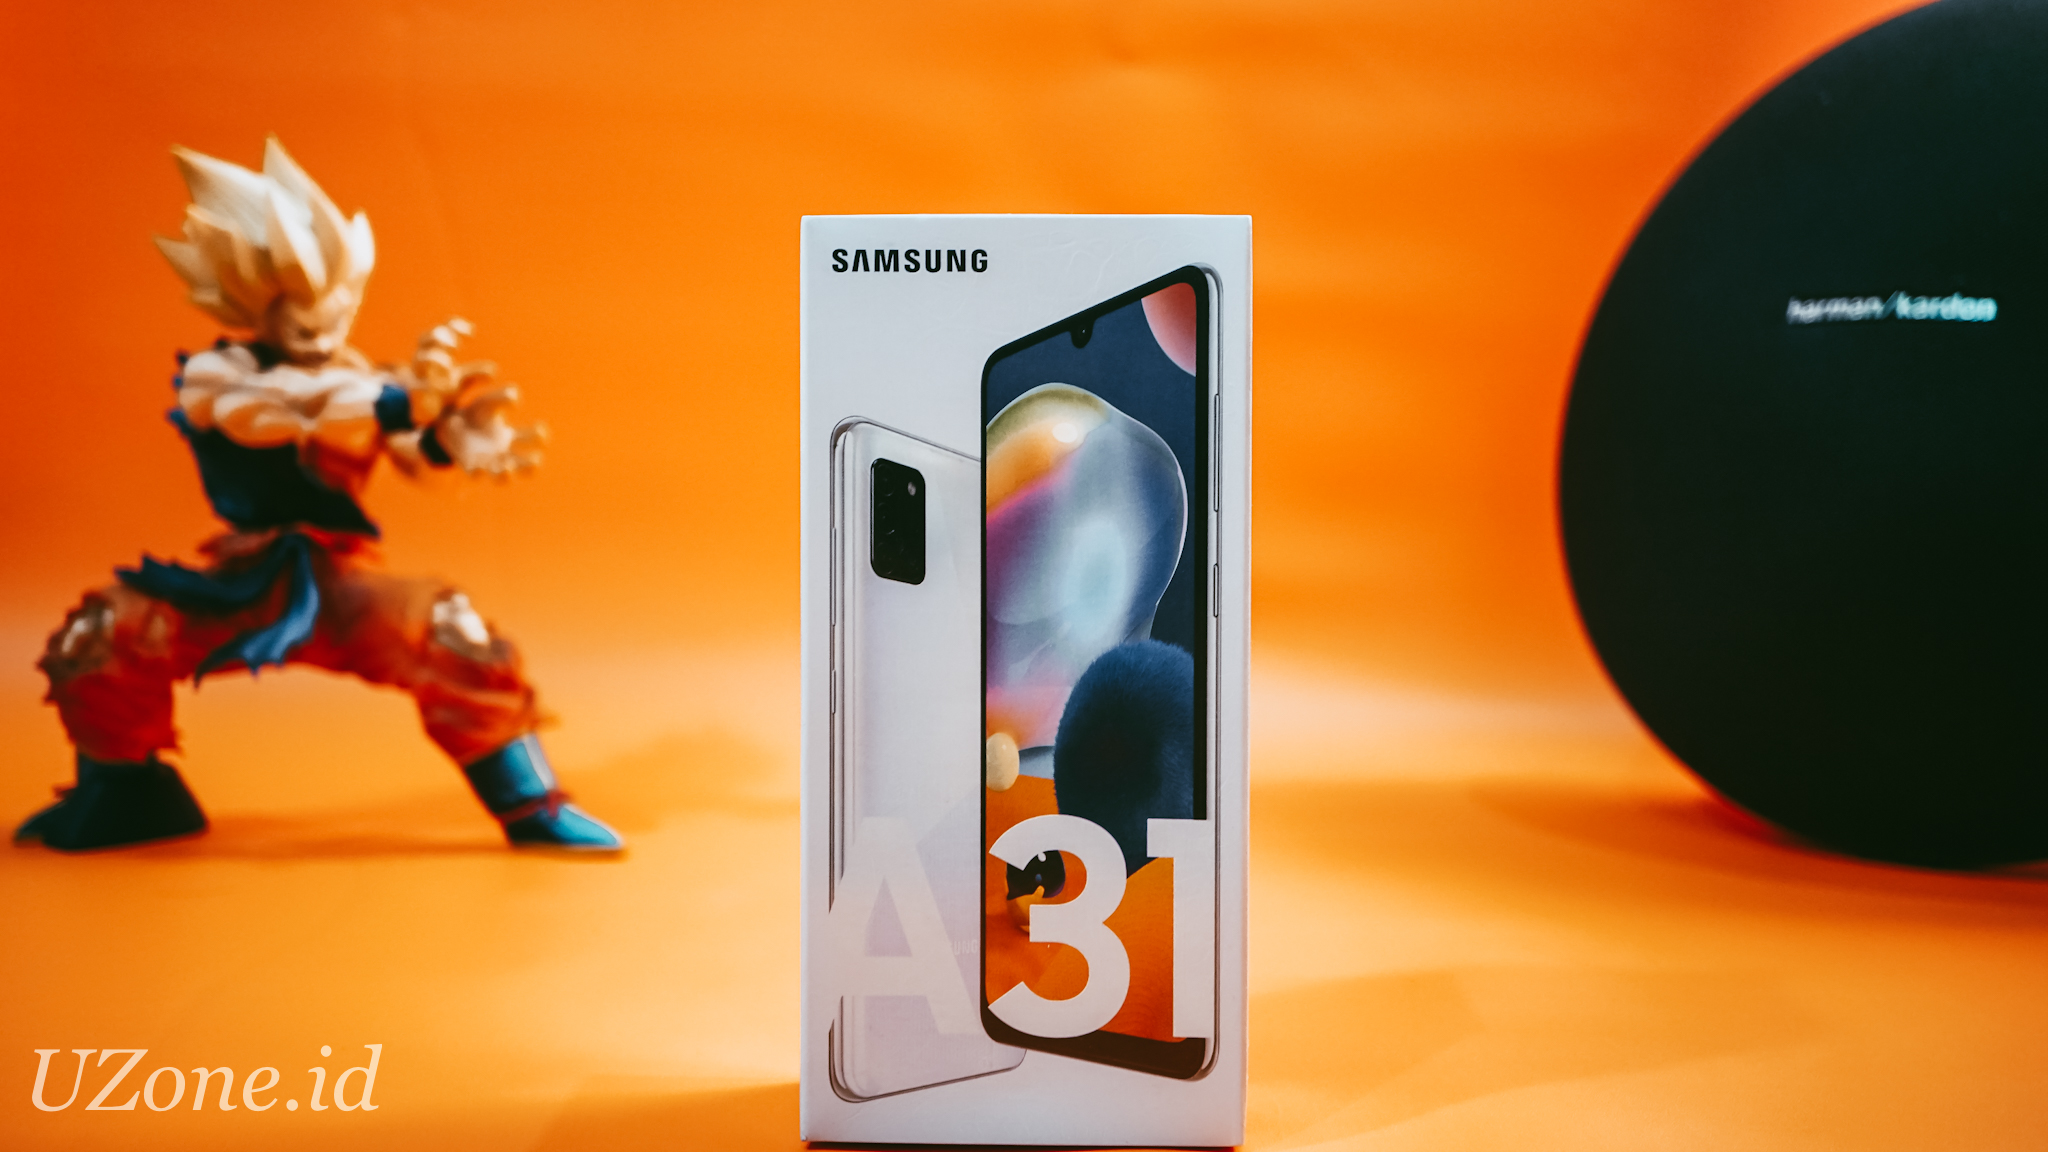 Resmi di Indonesia, Inilah Harga dan Spesifikasi Samsung Galaxy A31 